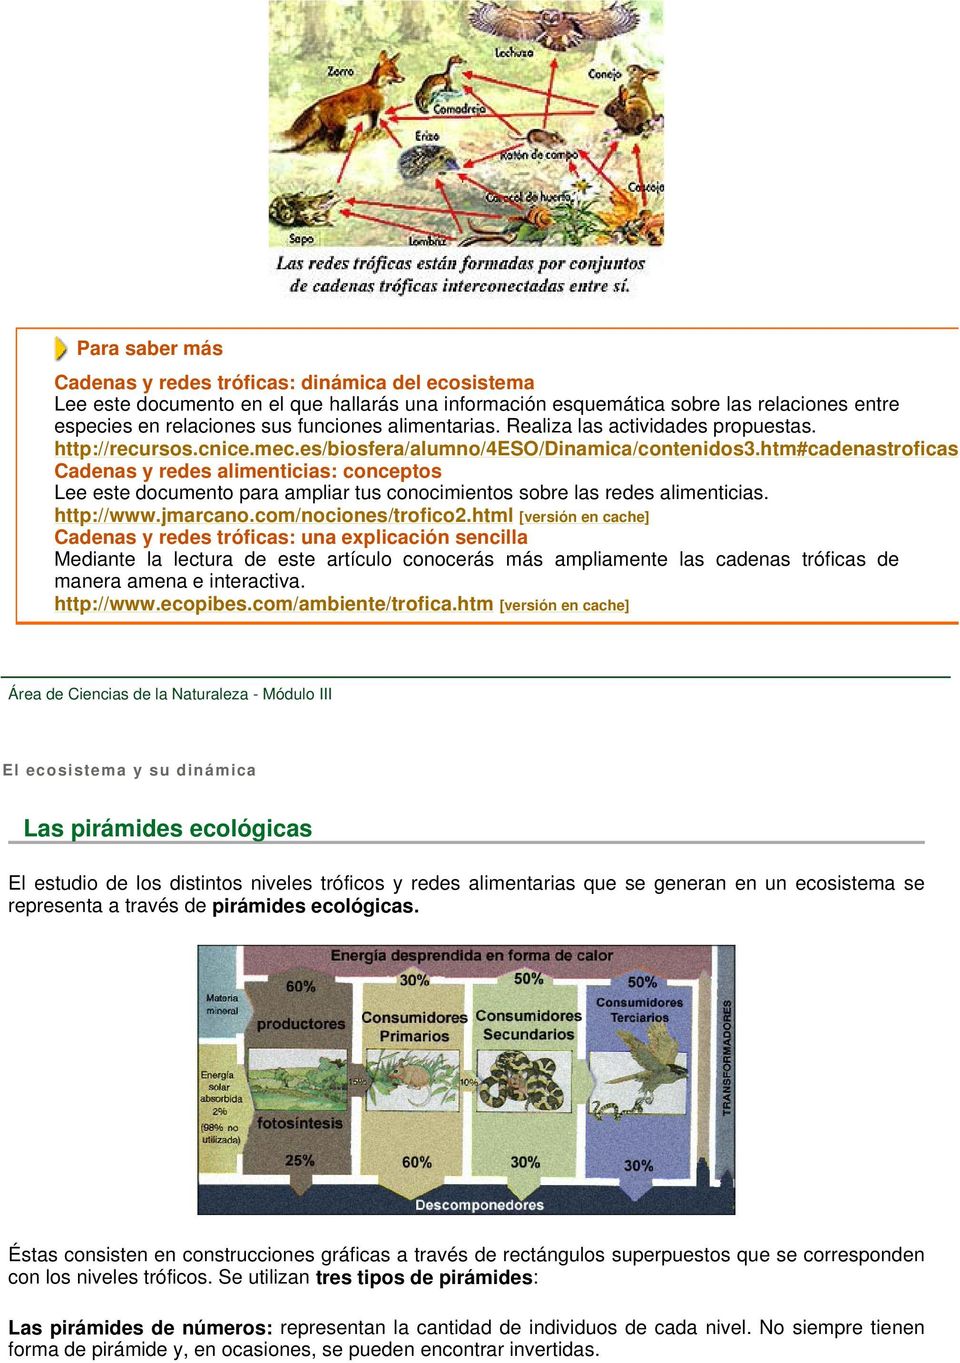 htm#cadenastroficas Cadenas y redes alimenticias: conceptos Lee este documento para ampliar tus conocimientos sobre las redes alimenticias. http://www.jmarcano.com/nociones/trofico2.